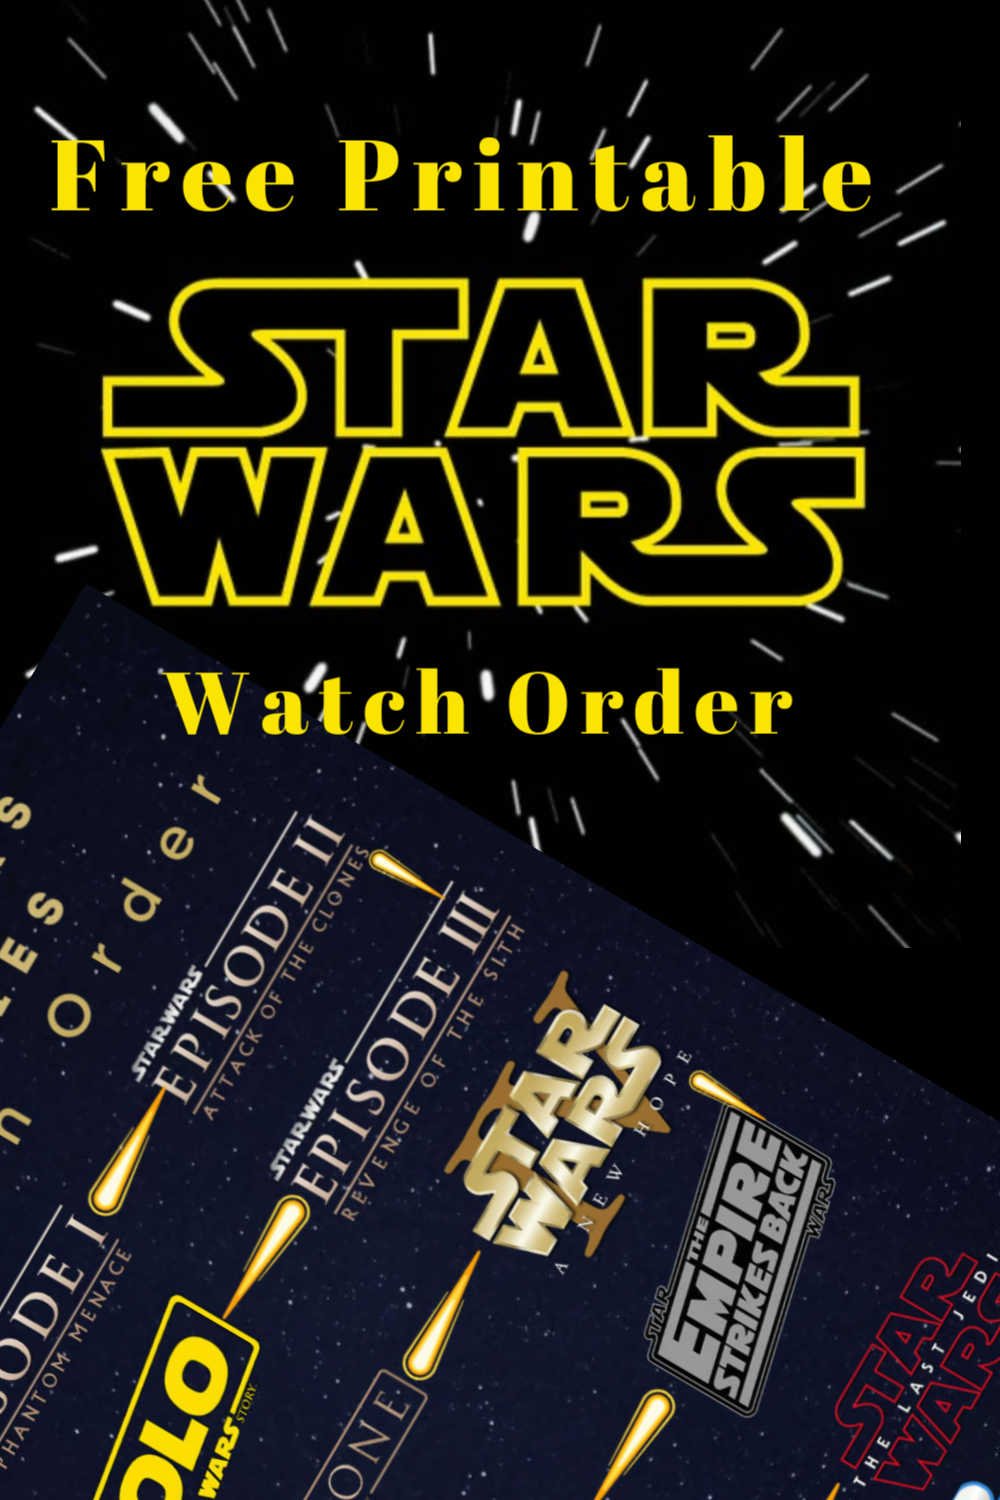 Free Printable Stars Wars Watch Order